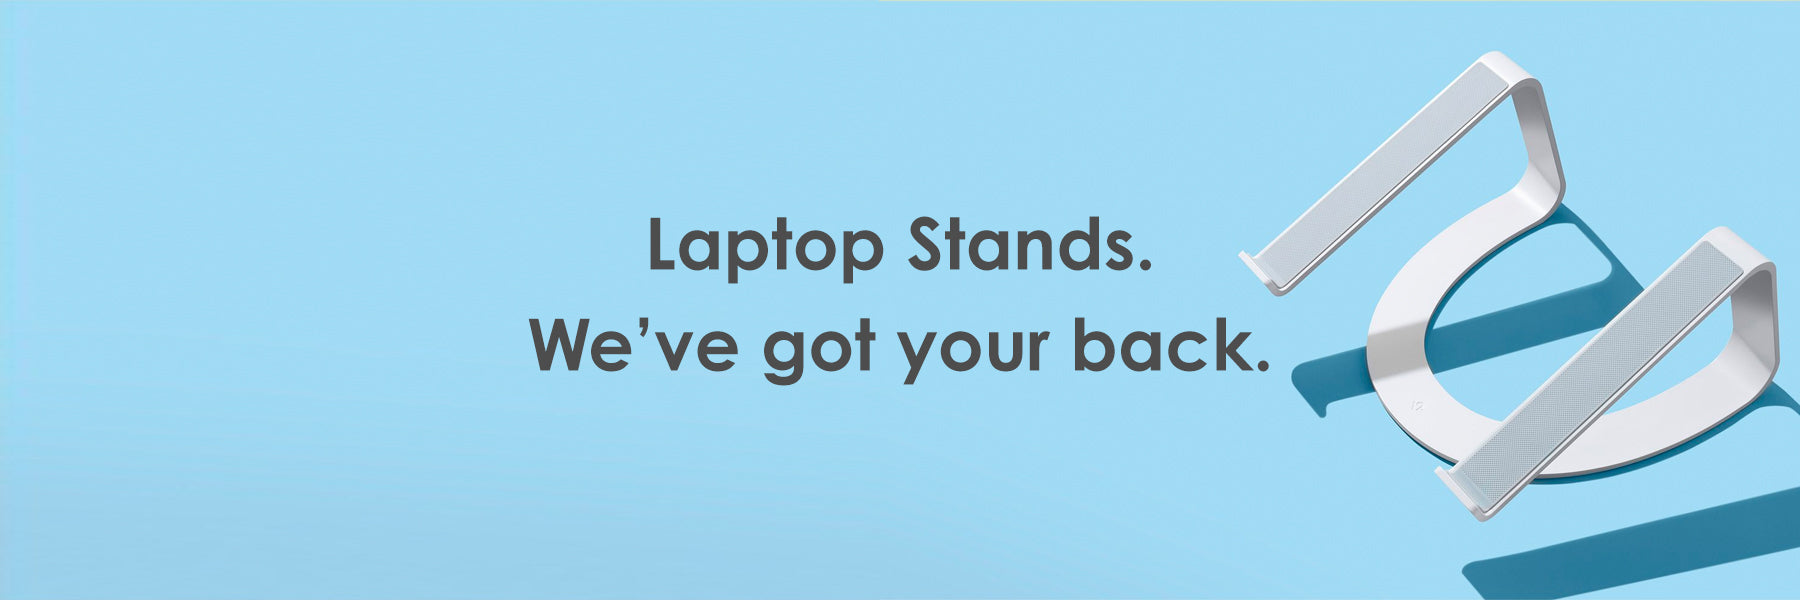 Laptop Stands. We've got your back.